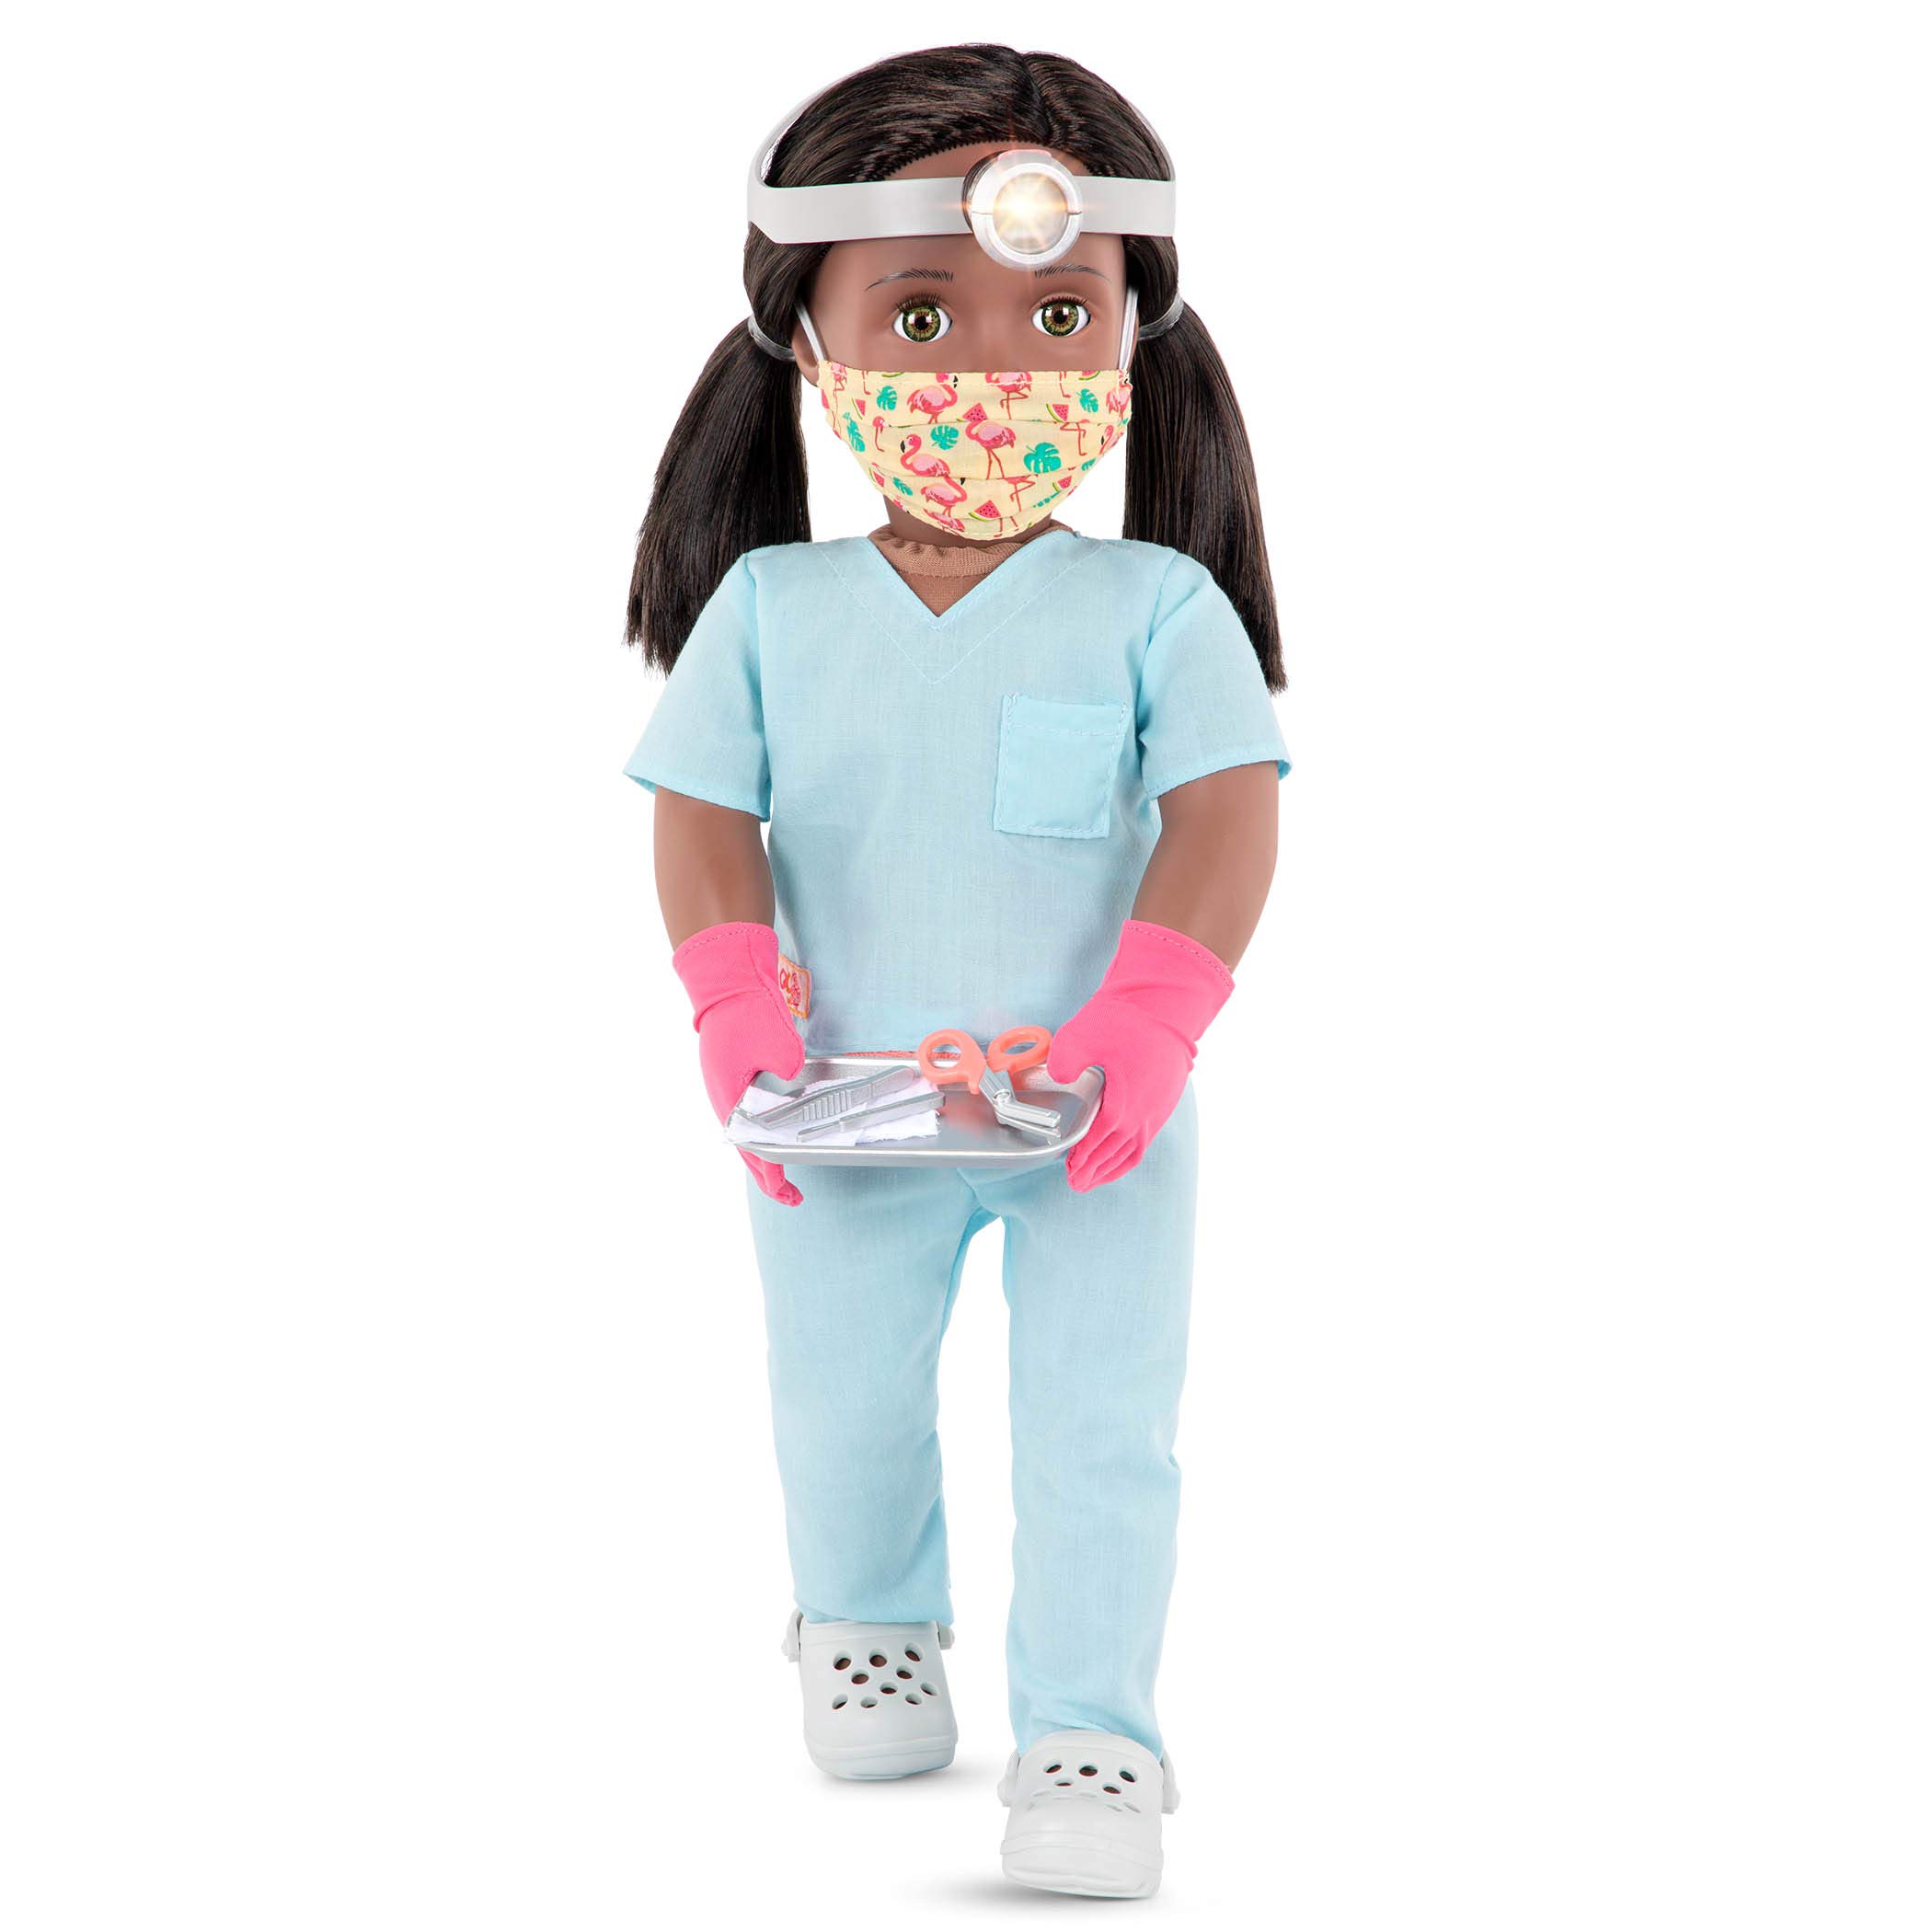 Our Generation 70.31320Z BD31320Z Surgeon Cierra – 46 cm Puppe mit Arztkleidung, Puppenzubehör und schwarzen Langen Haaren zum Frisieren – Kinder Spielzeug ab 3 Jahren-45444 HCM Kinzel, Mehrfarbig